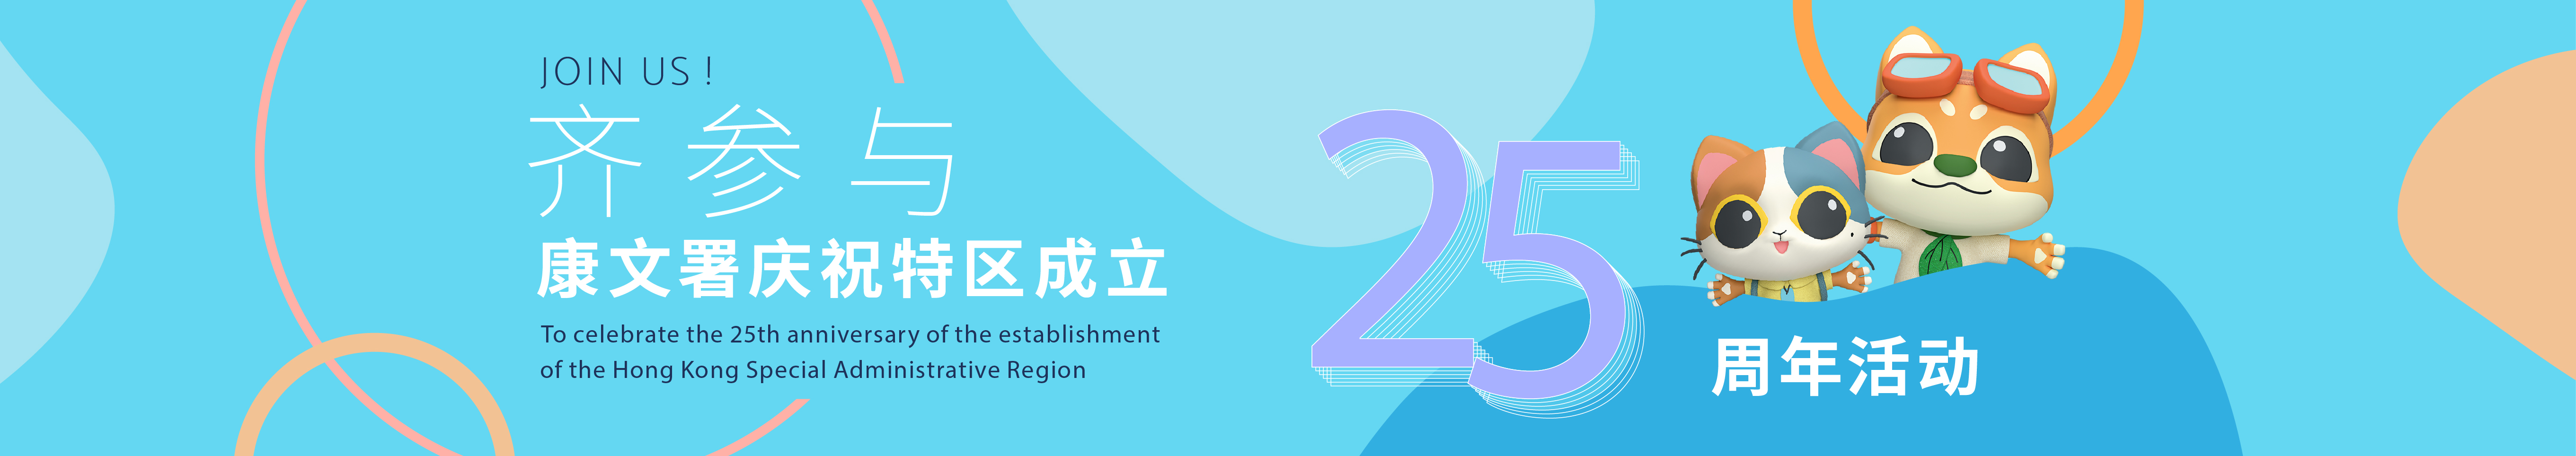 康文署庆祝香港特区成立25周年活动